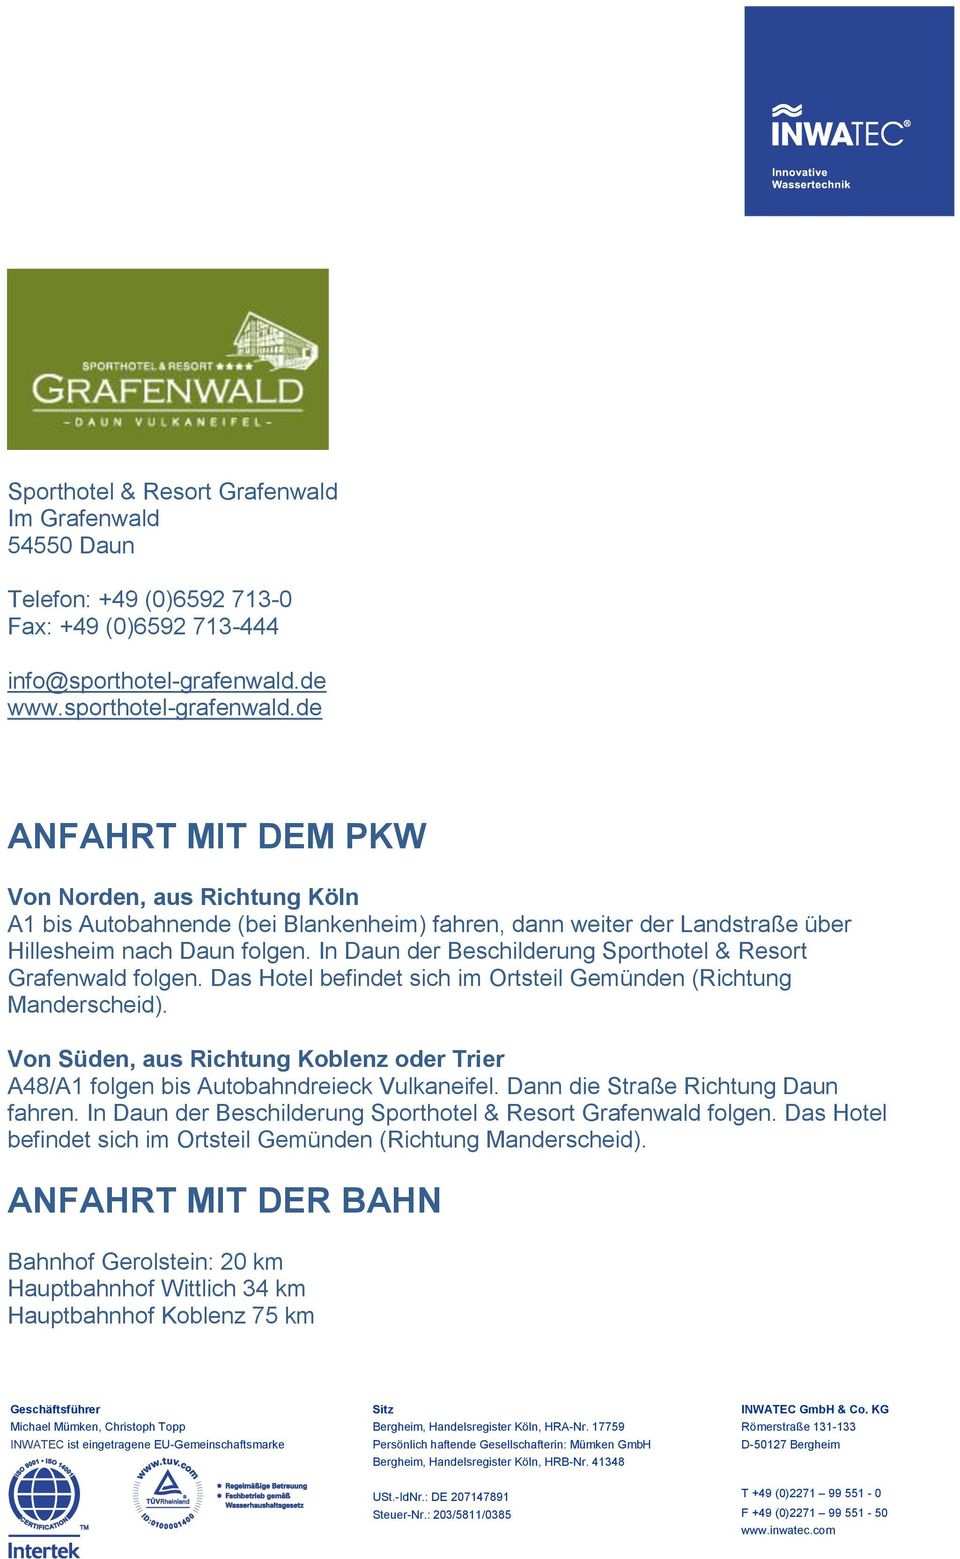 In Daun der Beschilderung Sporthotel & Resort Grafenwald folgen. Das Hotel befindet sich im Ortsteil Gemünden (Richtung Manderscheid).